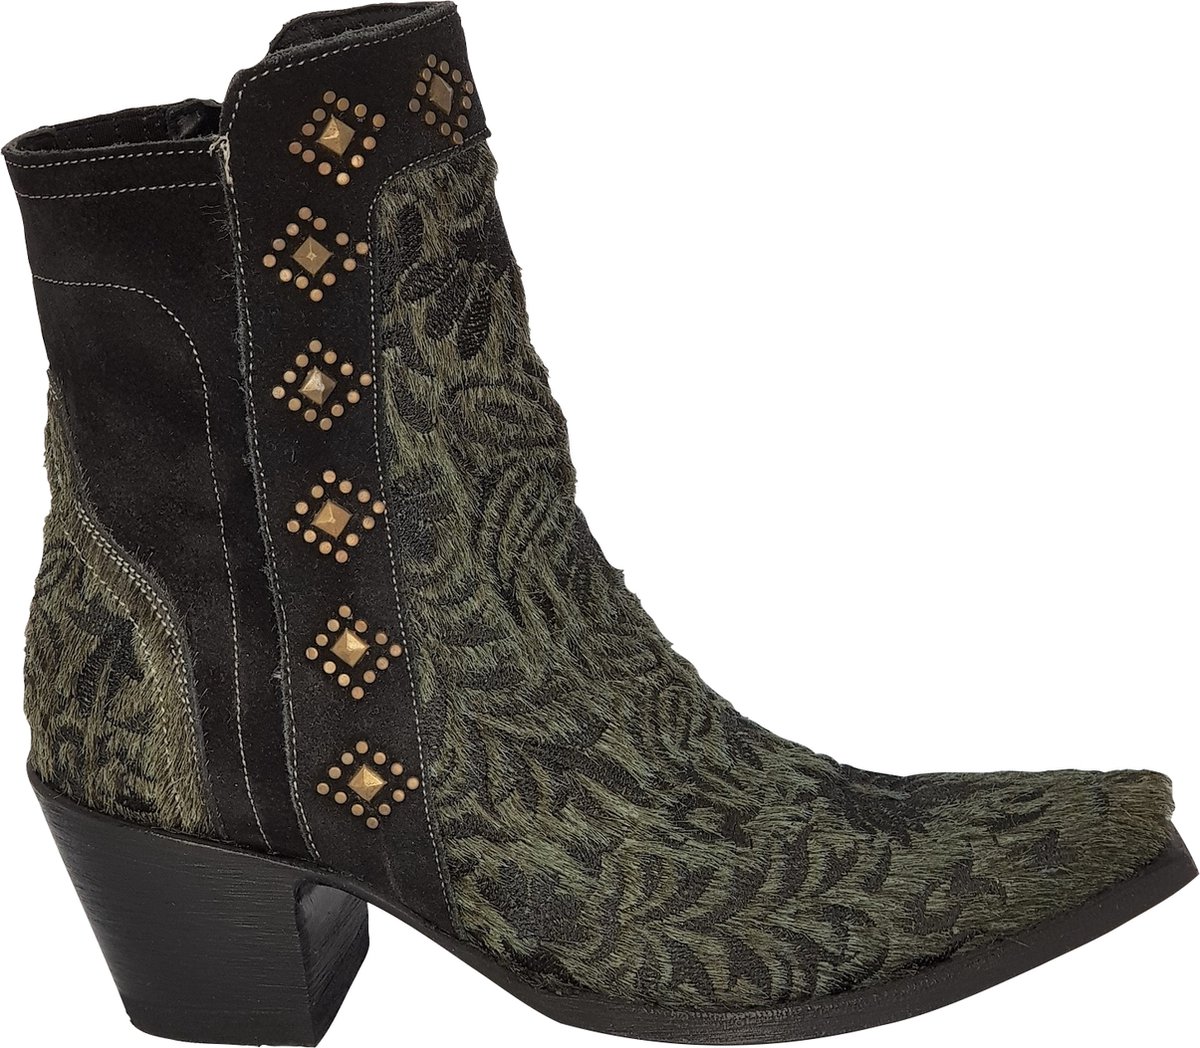 Cowboy laarzen dames Old Gringo Wink - echt leer met haartjes - groen/zwart - studs - spitse neus - maat 40